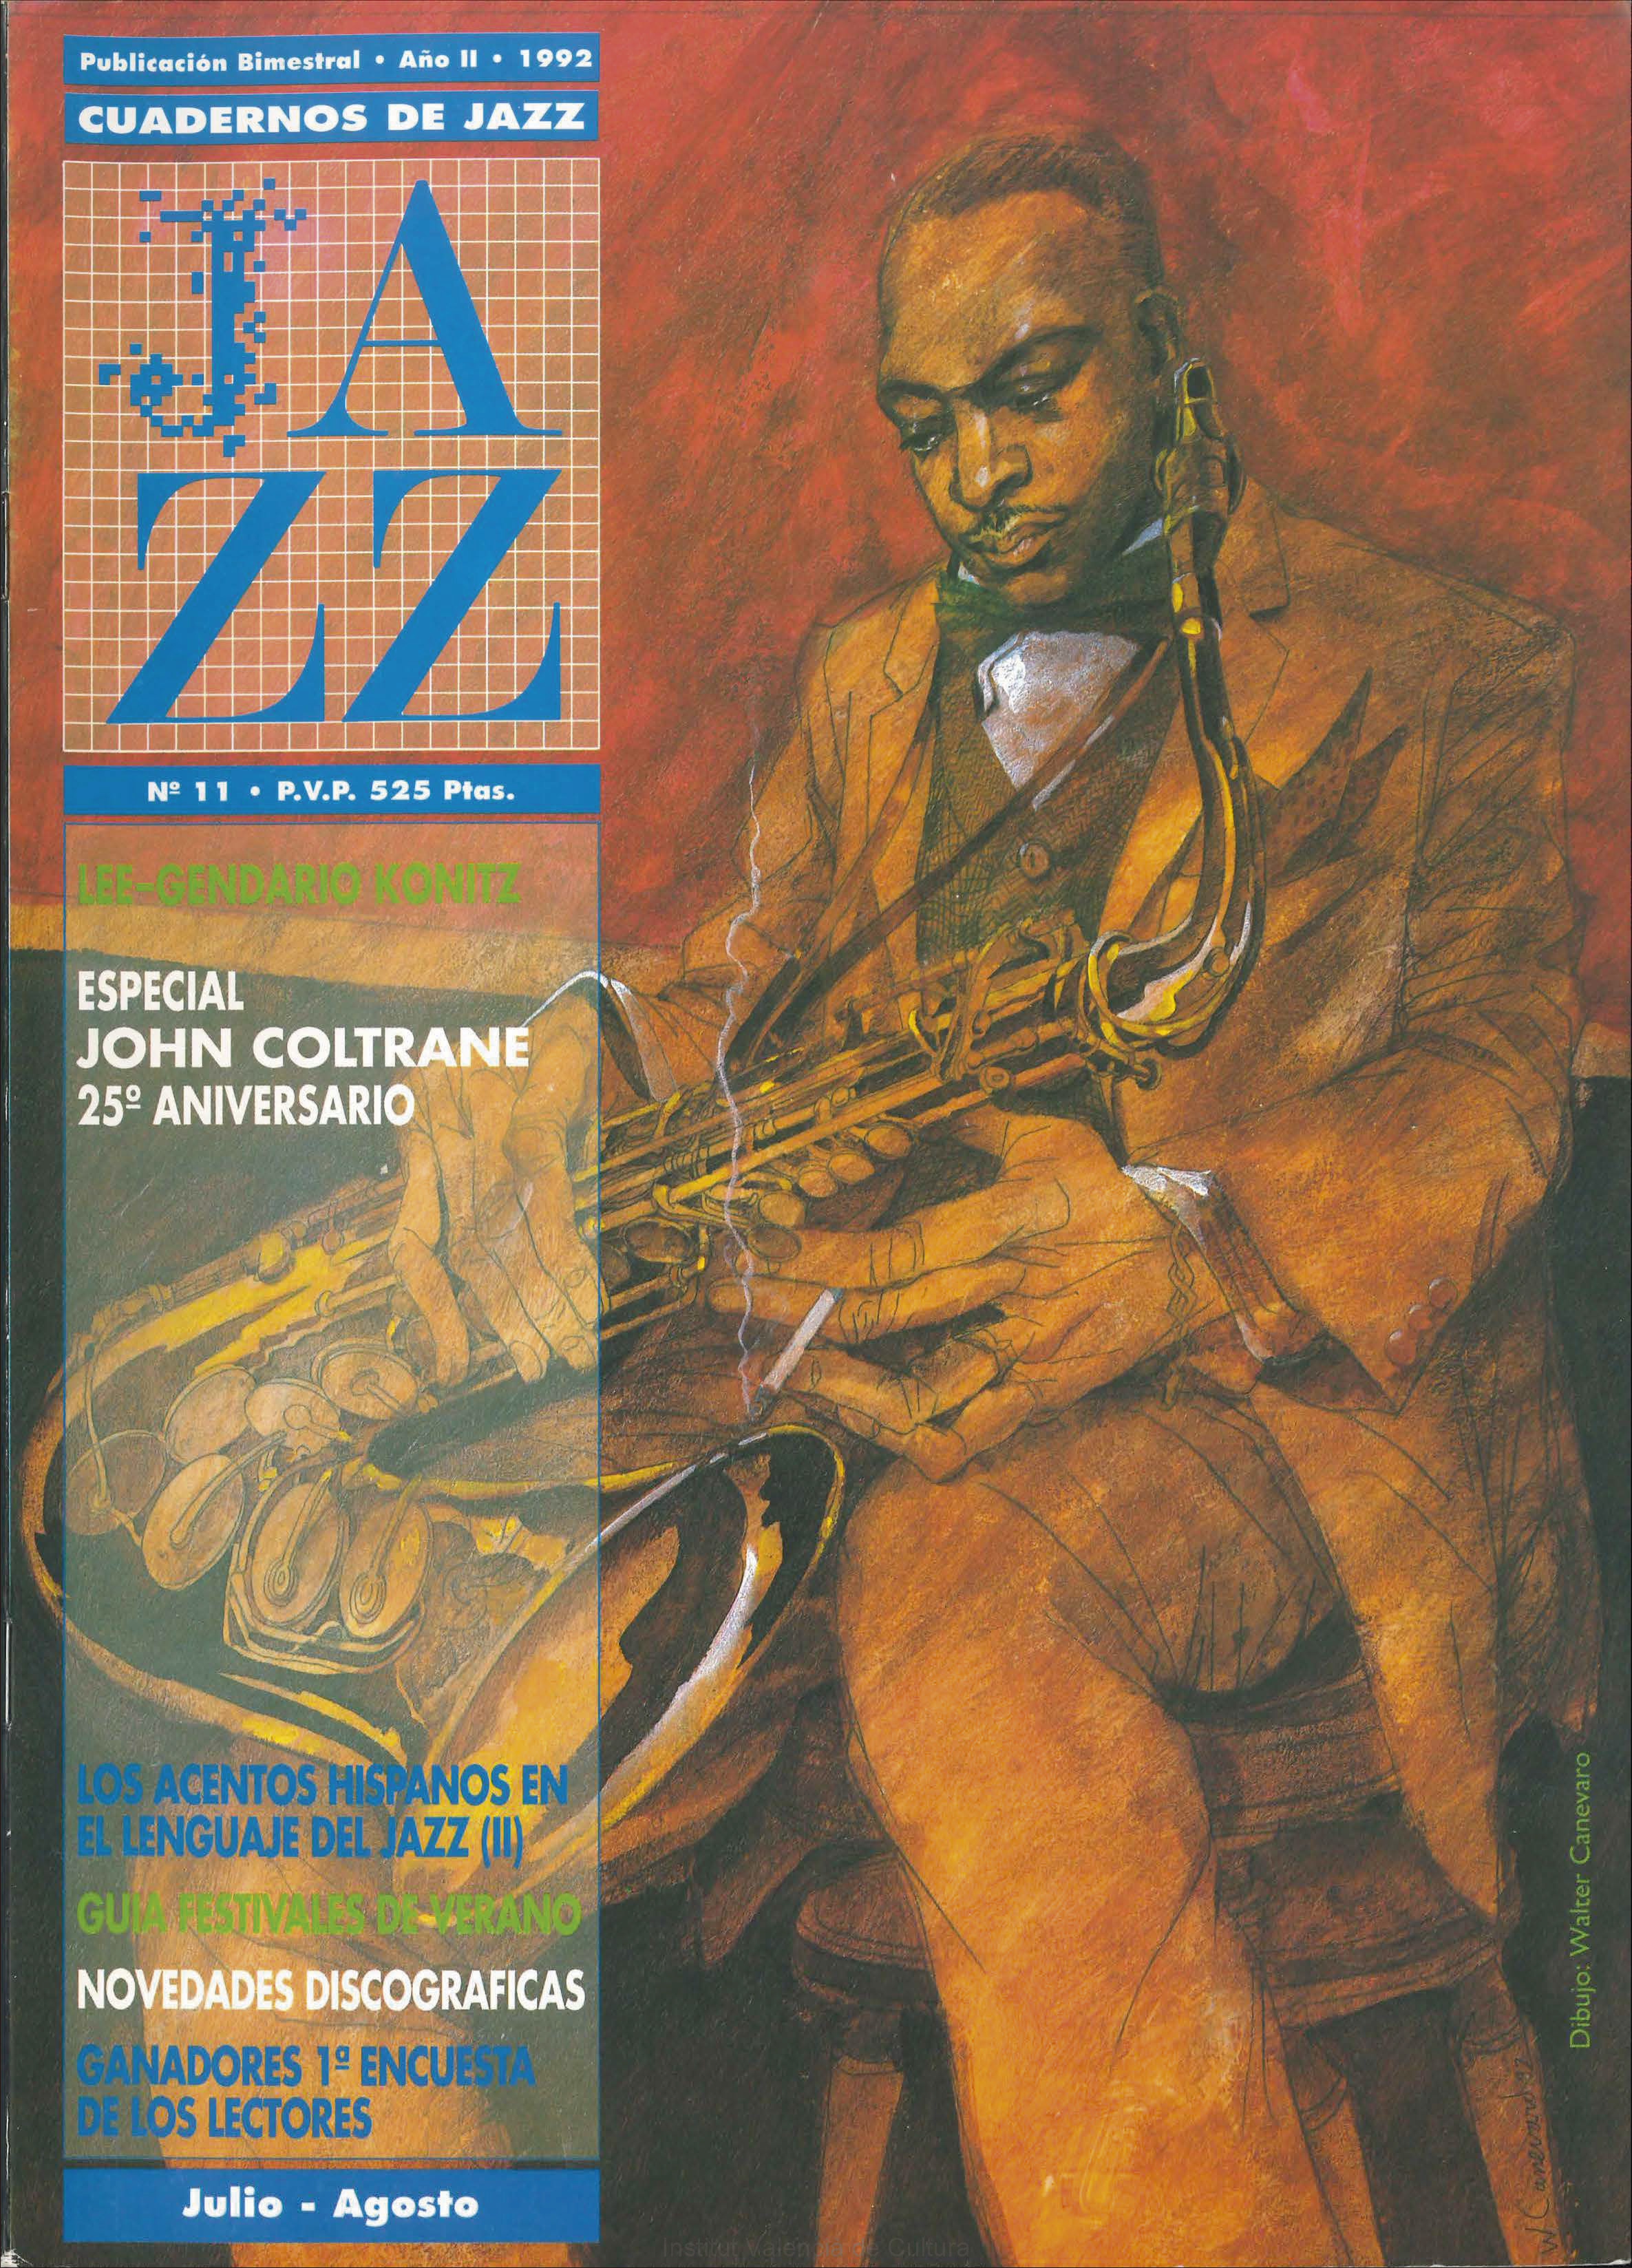 Cubierta del número 11 de la revista Cuadernos de Jazz